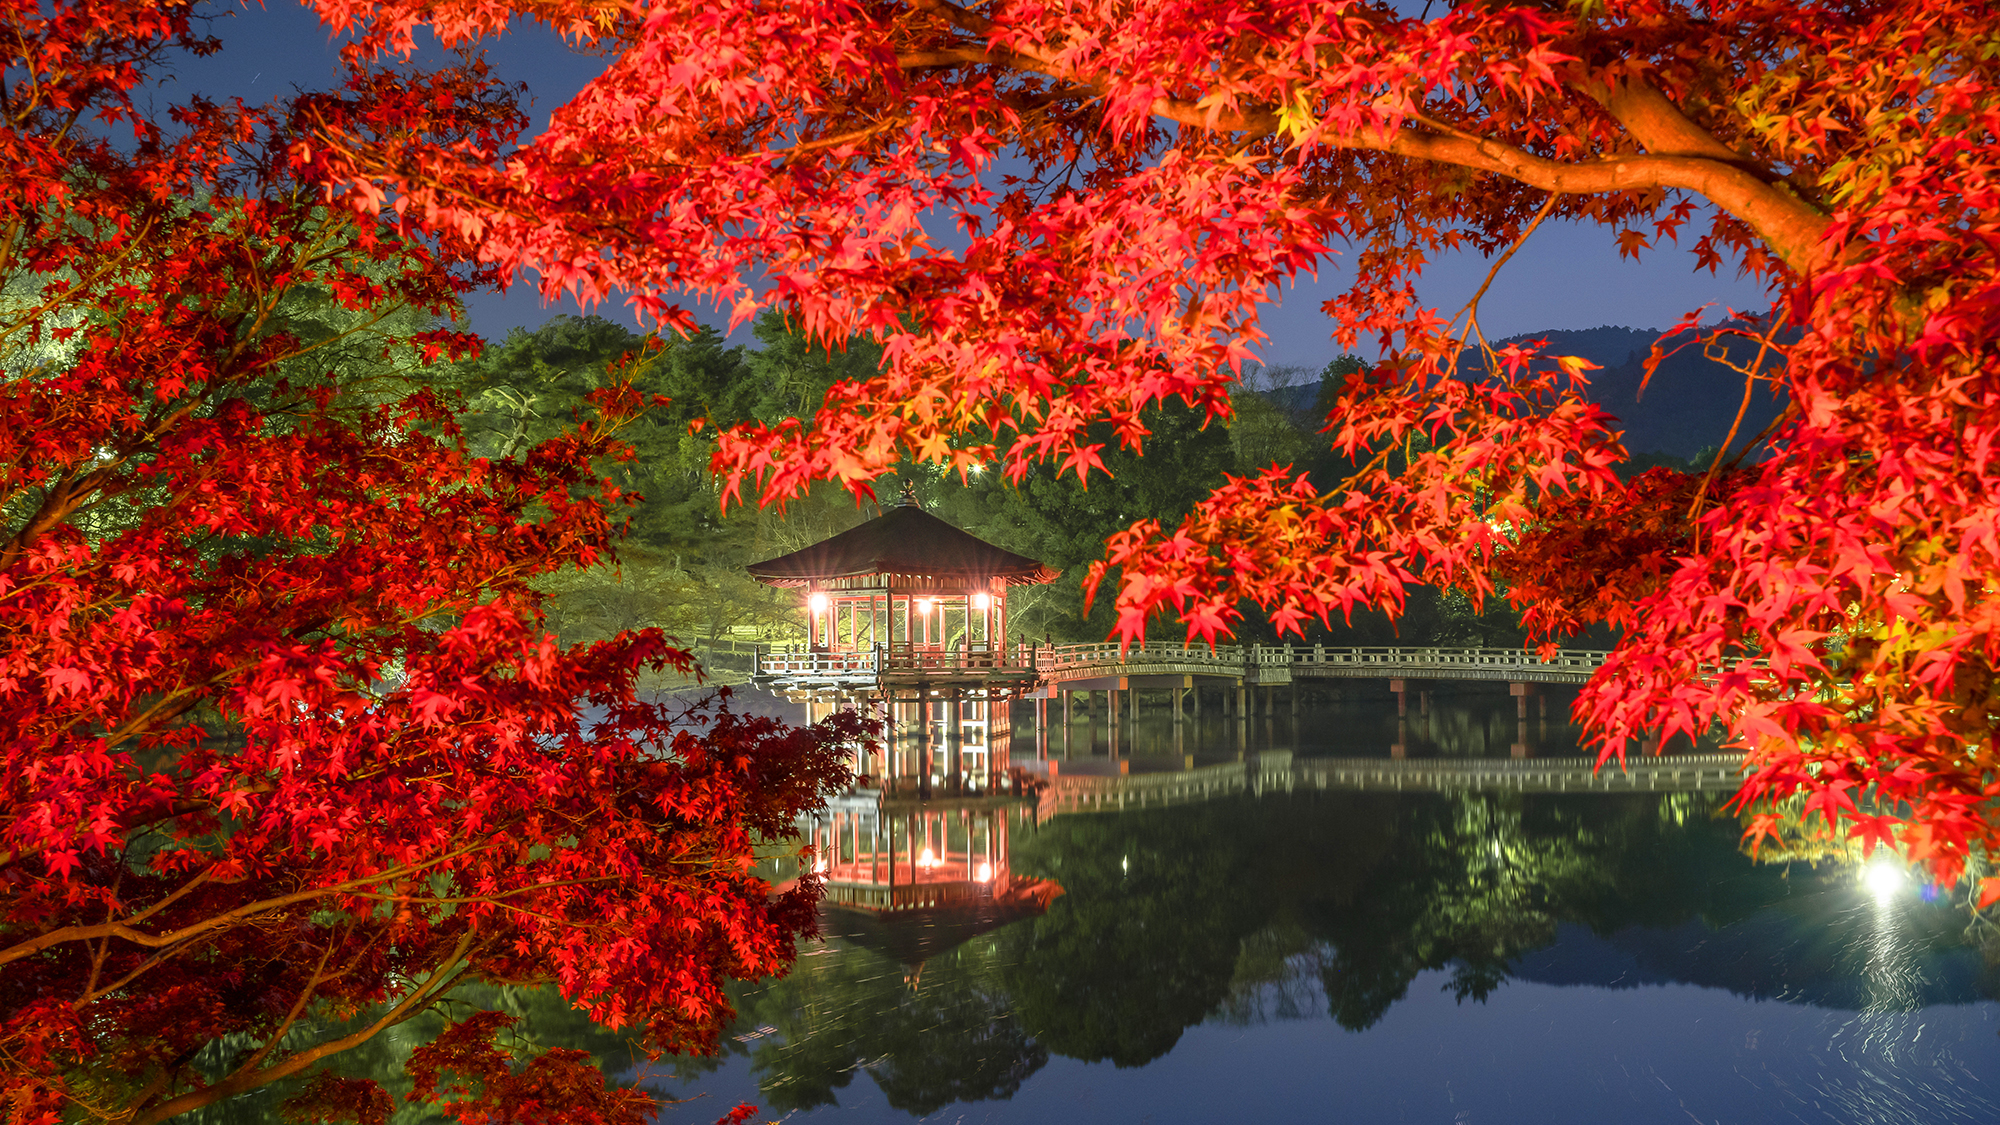 【奈良公園浮見堂】奈良観光に便利な立地です。※イメージ